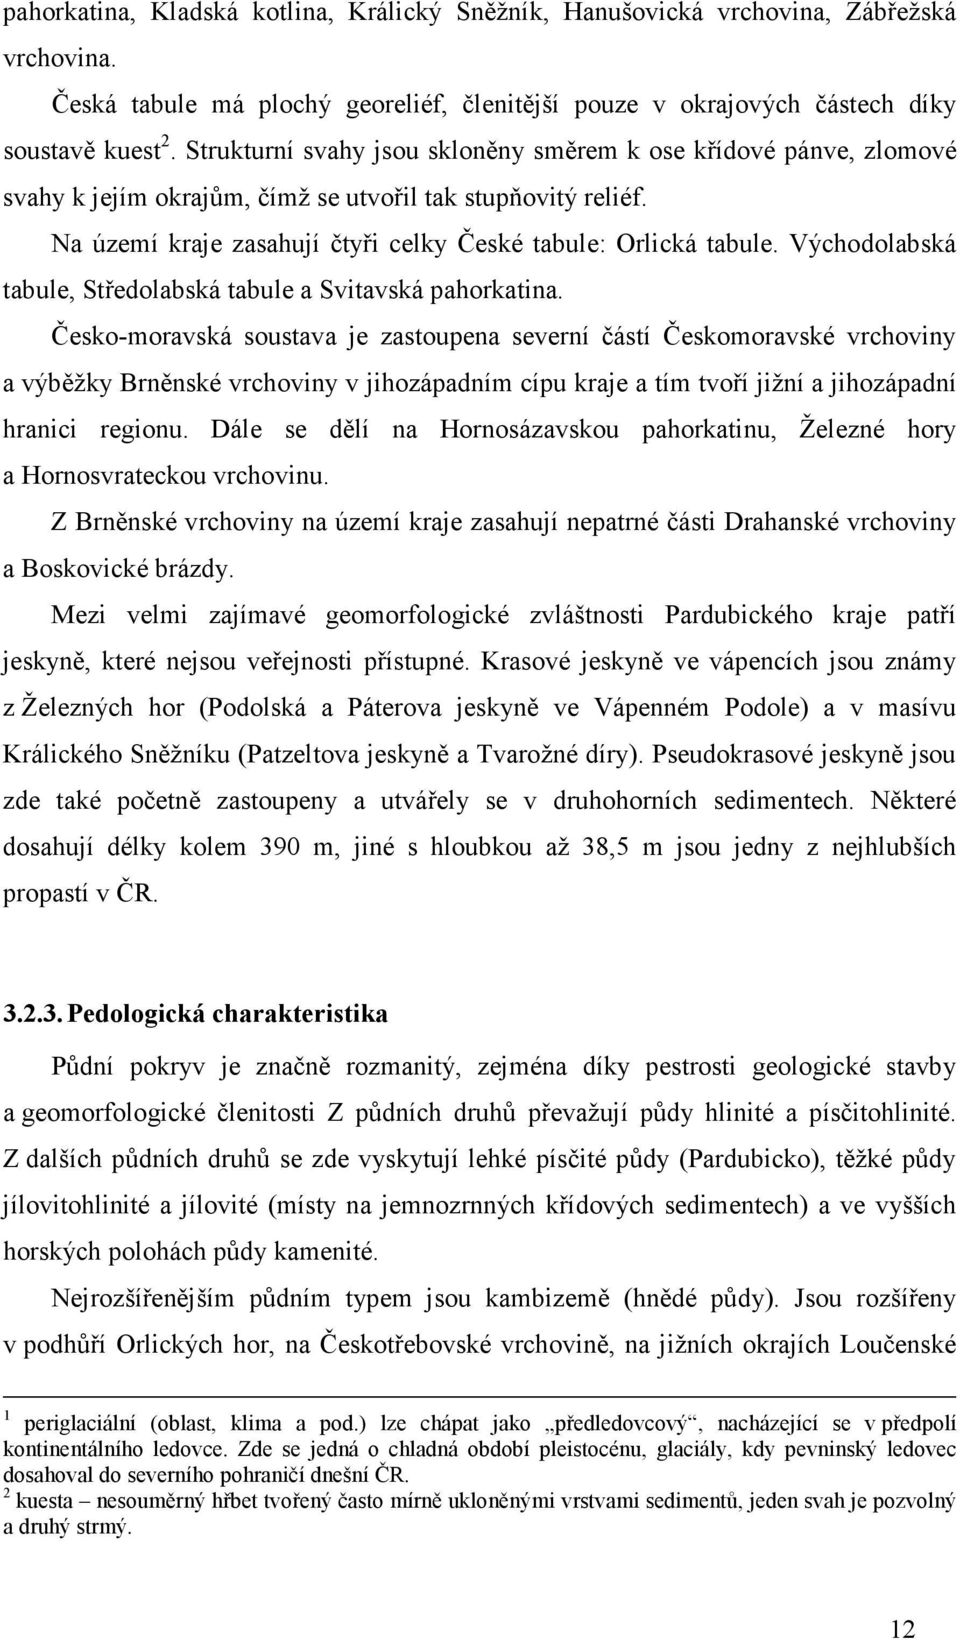 Východolabská tabule, Středolabská tabule a Svitavská pahorkatina.